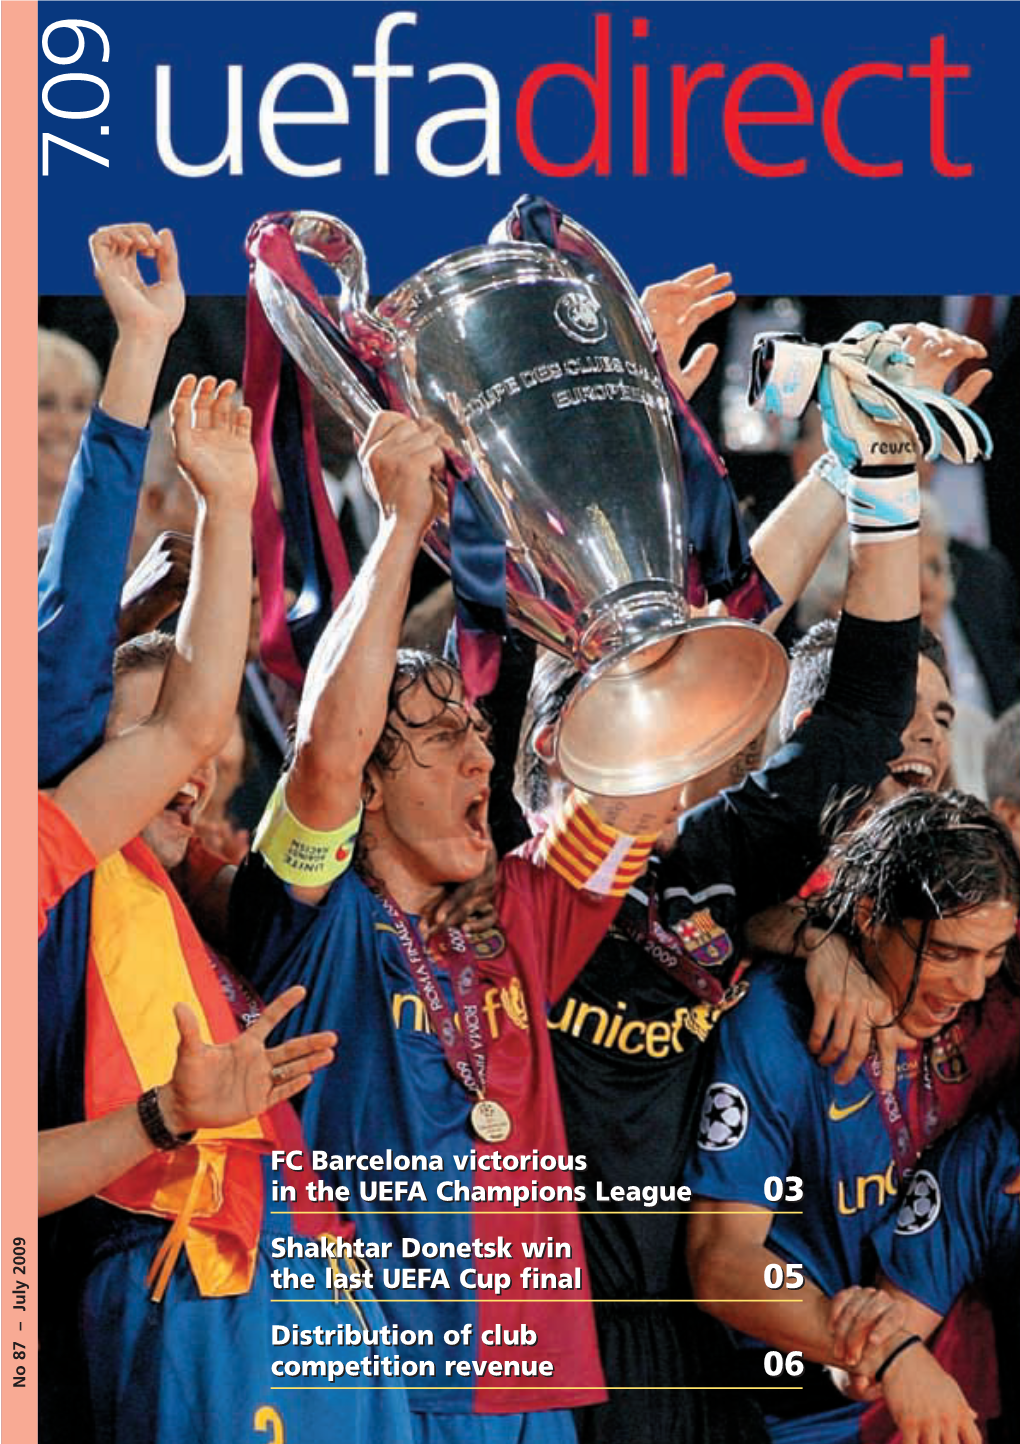 Uefadirect #87 (07.2009)